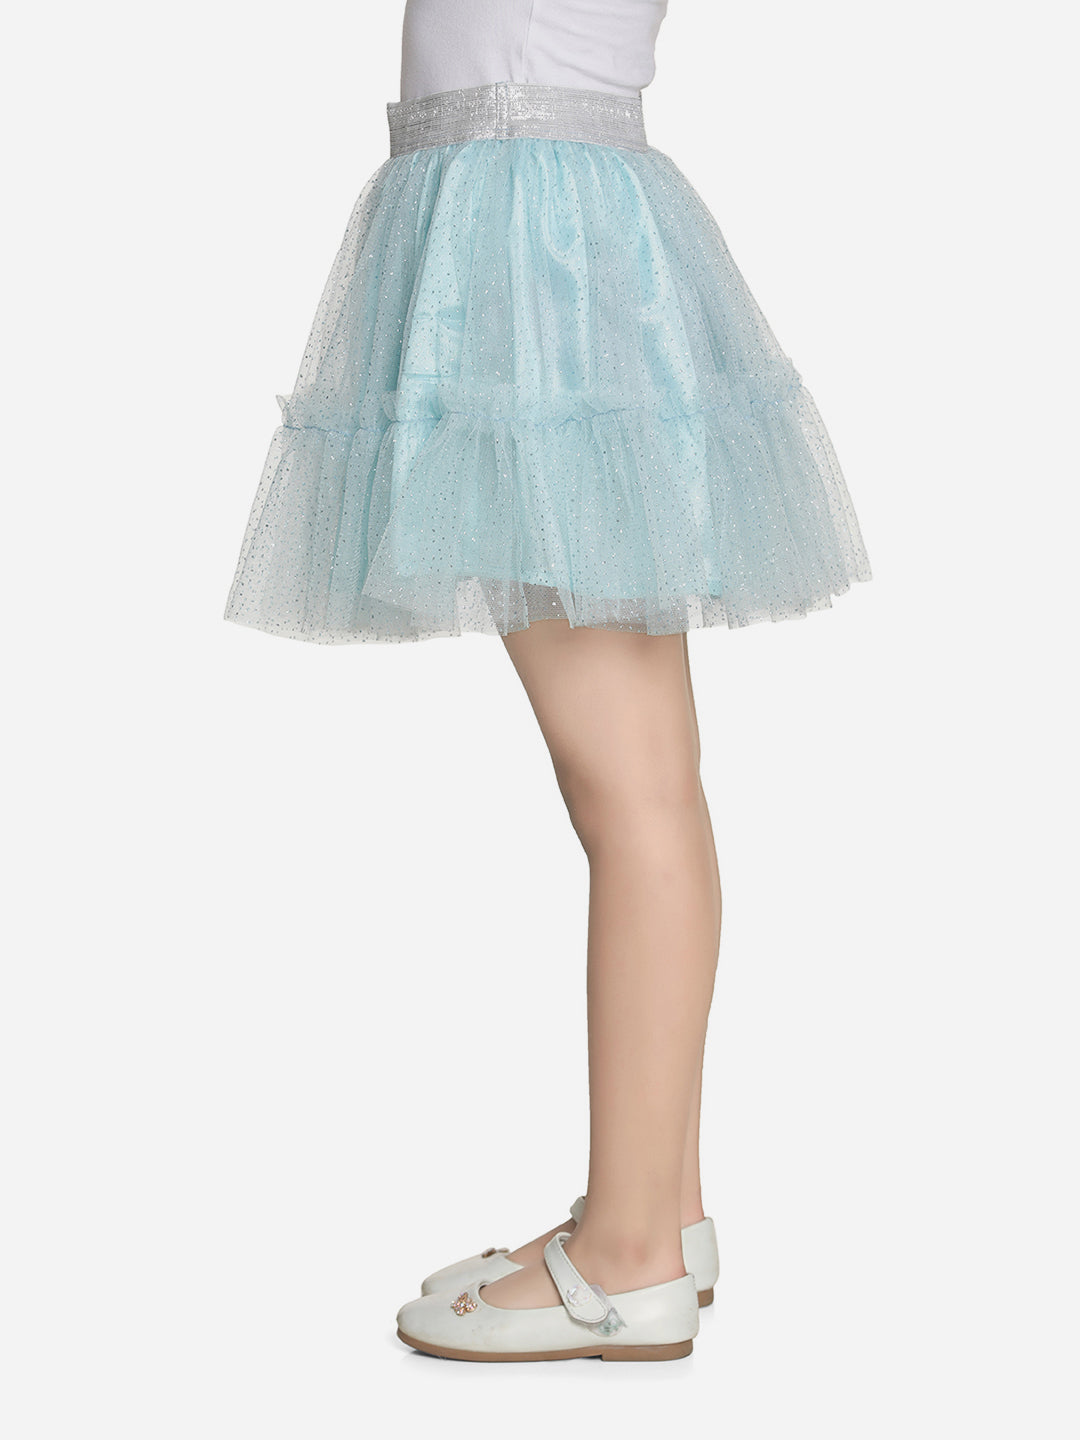 Girls Glitter Blue Net Skirt with Silver Elastic Waist